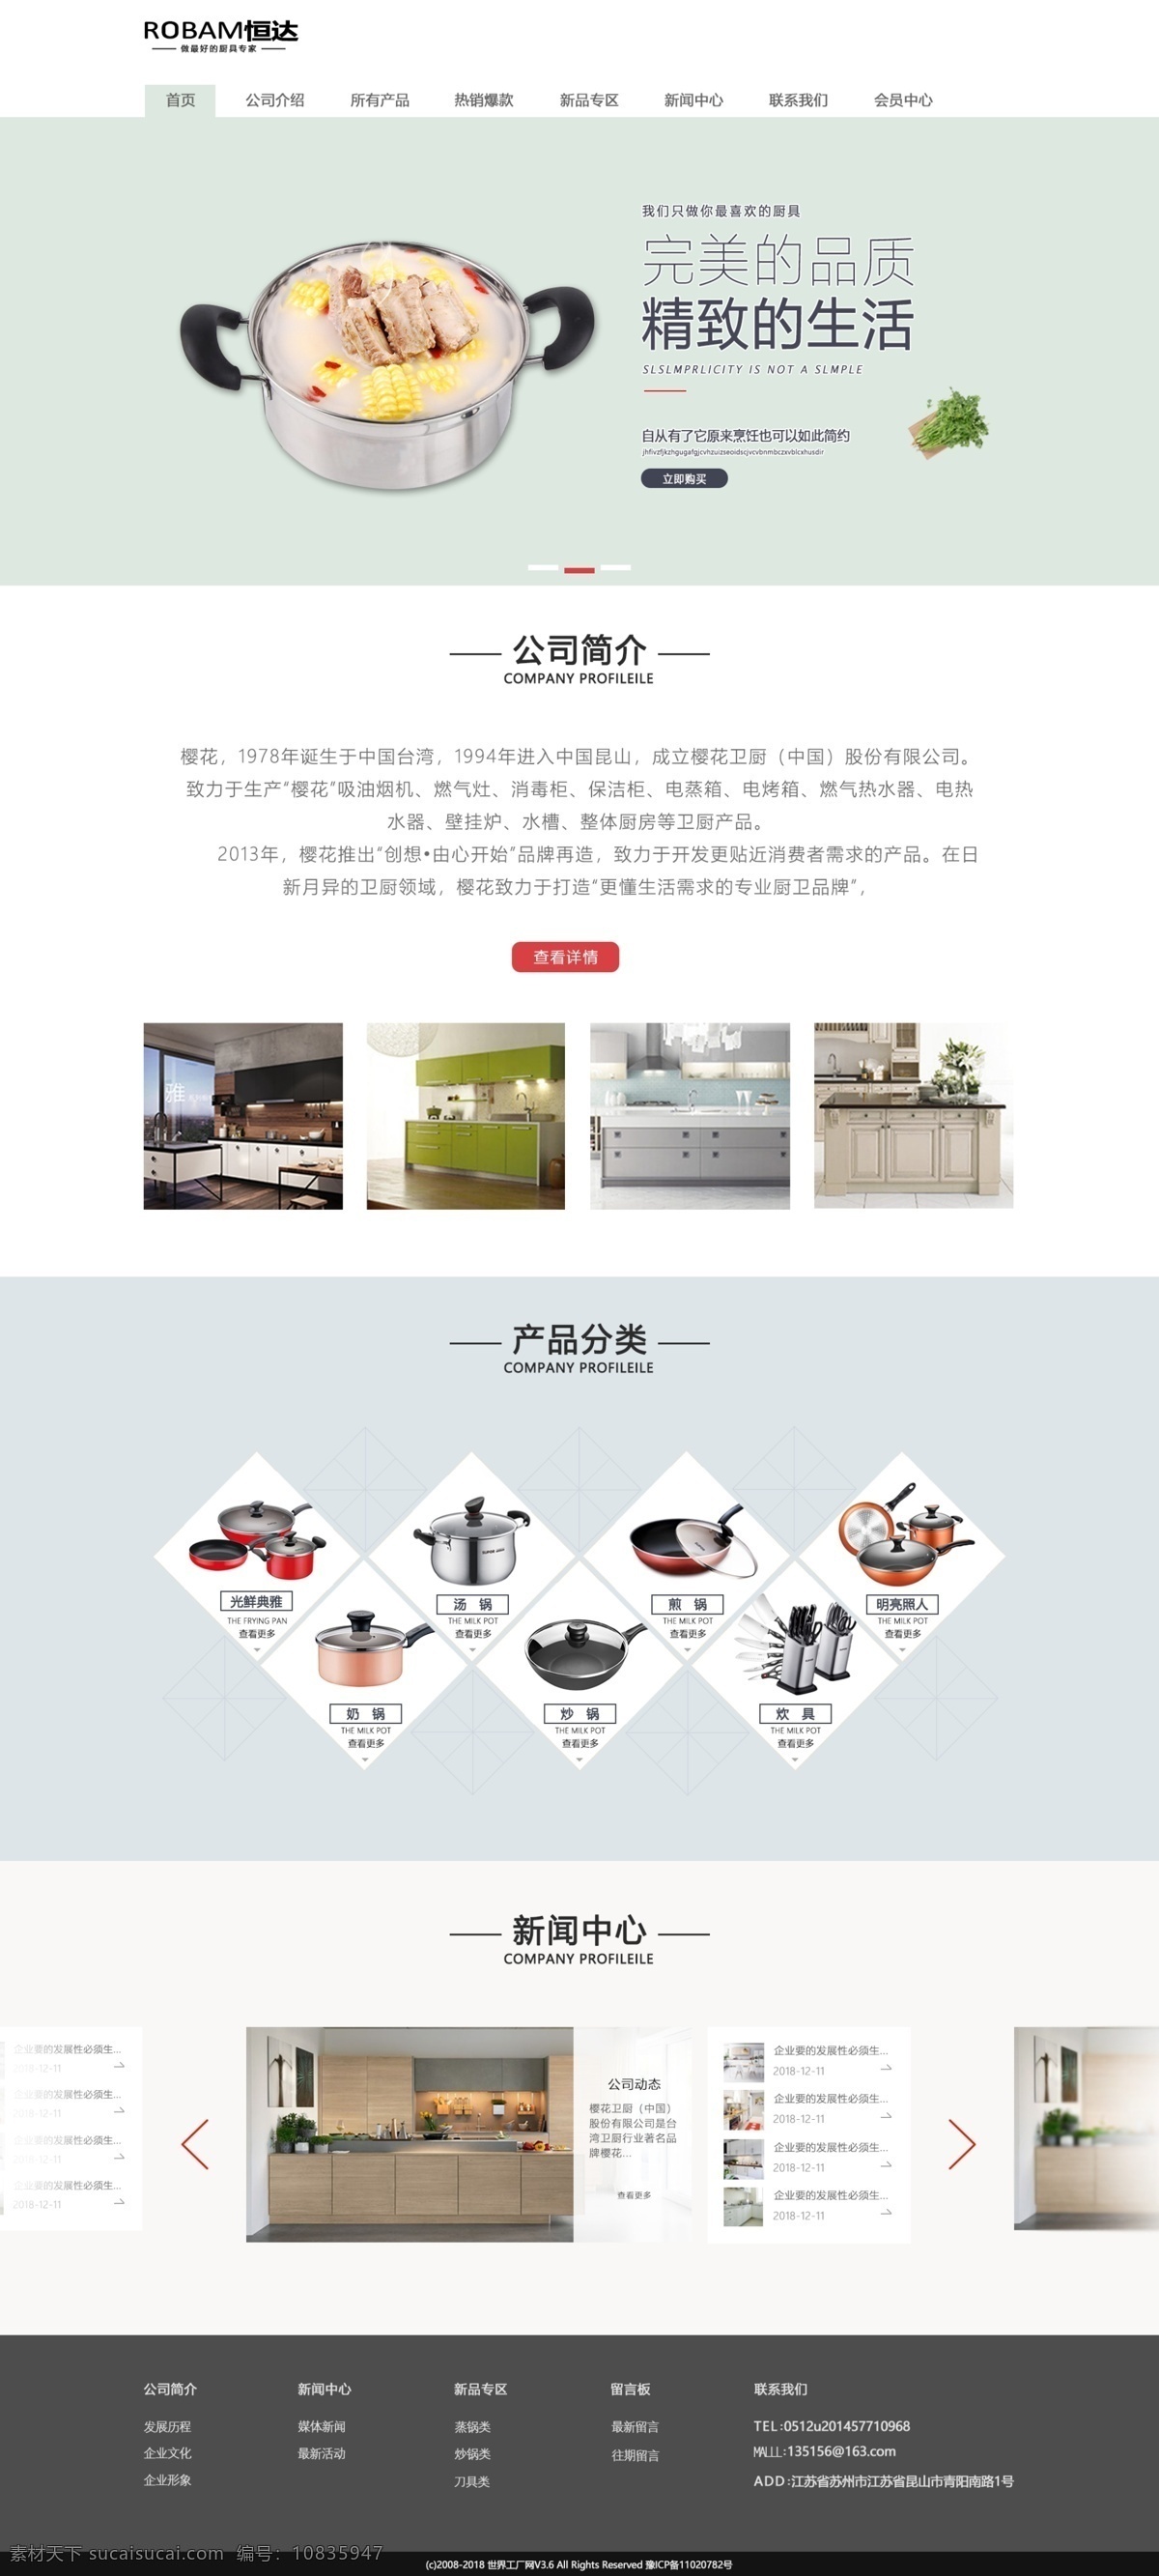 恒达 厨具 企业 站 首页 企业站 厨具首页 厨房企业站 清新首页 简洁 web 界面设计 中文模板